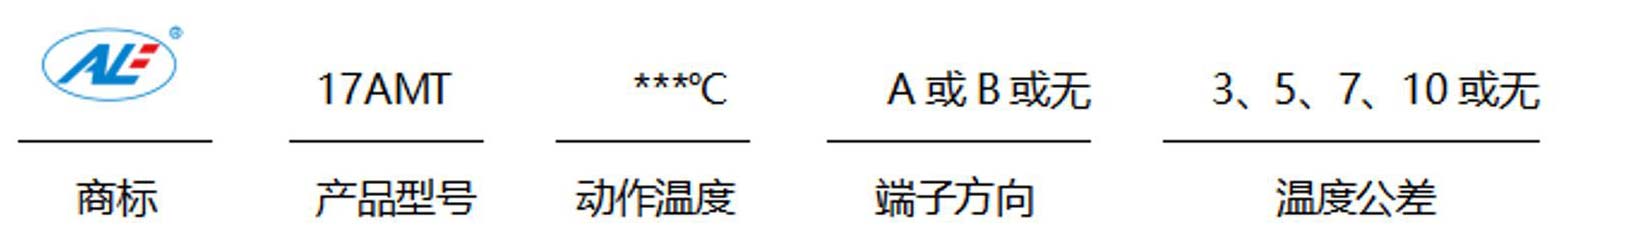 温度电流双保护系列-产品说明书_05_10.jpg